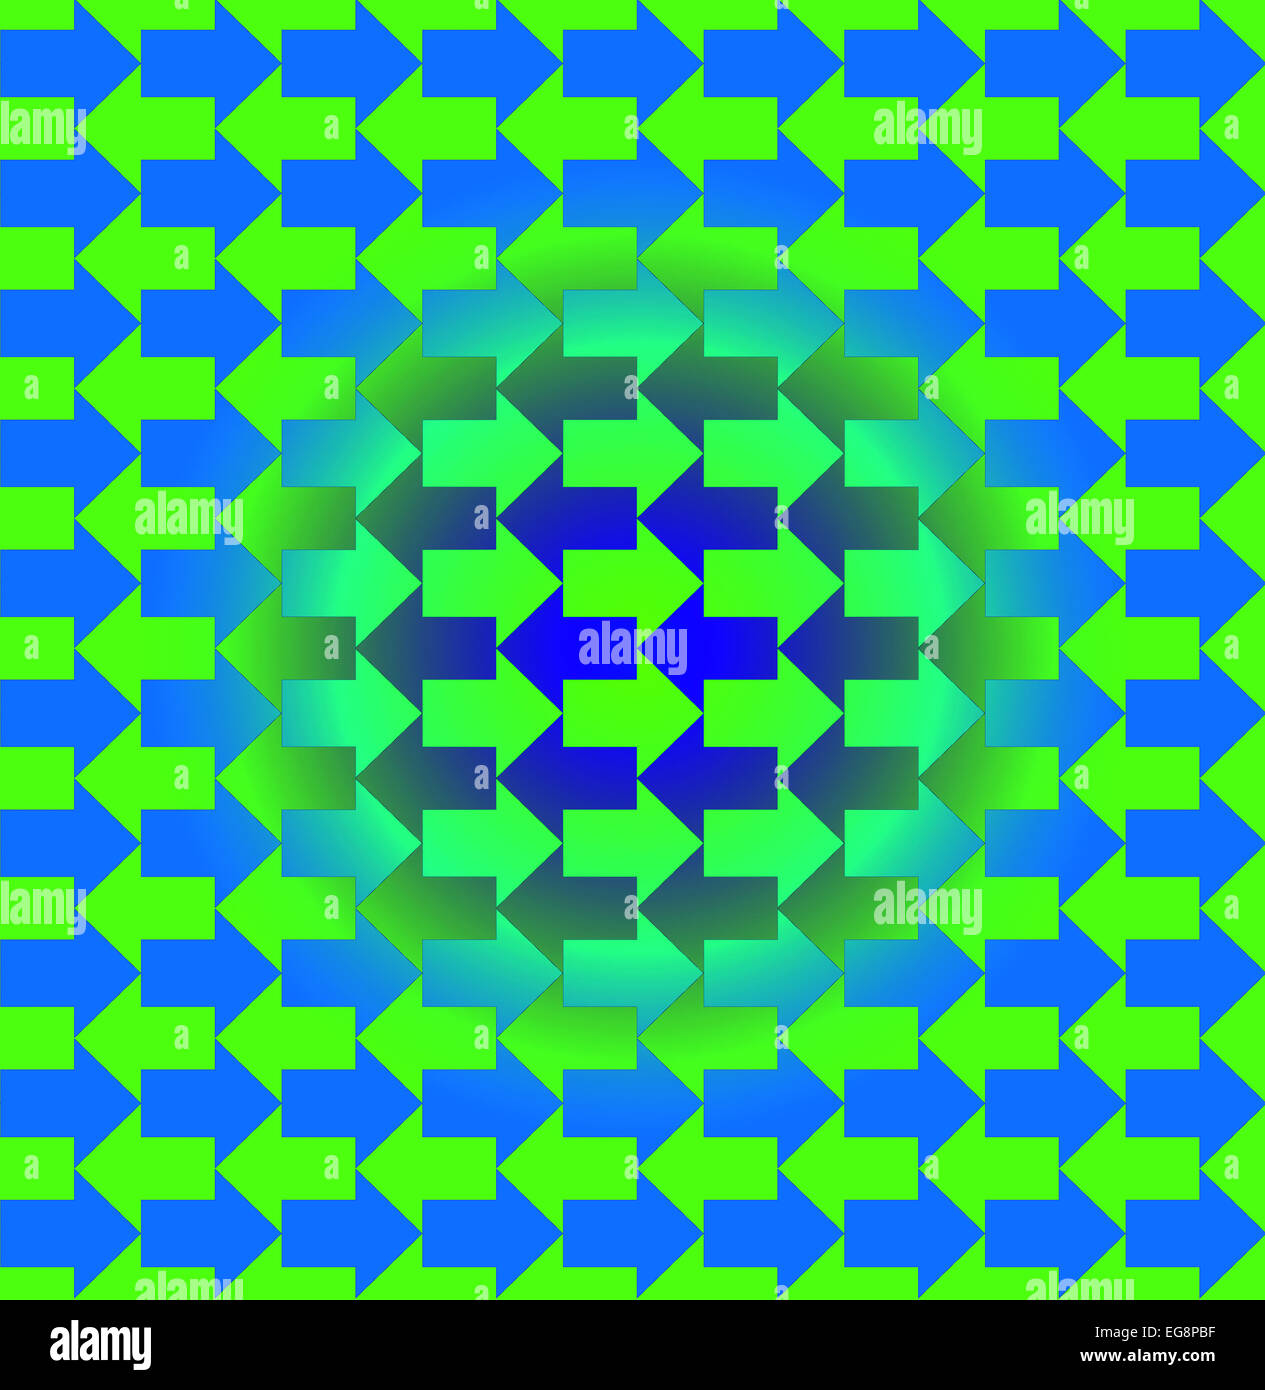 Grüne und blaue Pfeile entgegengesetzte Richtungen, mit einem Gefälle, so dass die Muster aussehen drei dimensionale in der Mitte Stockfoto